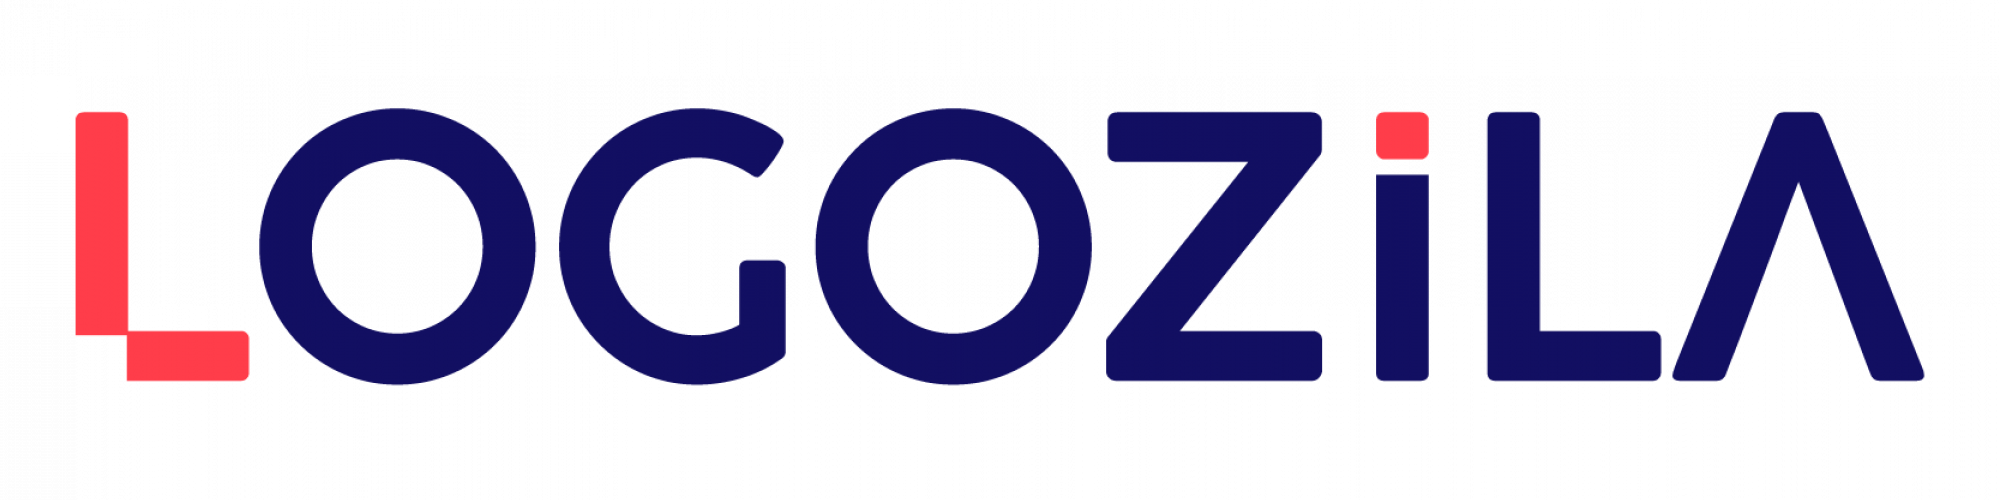 Logozila UK